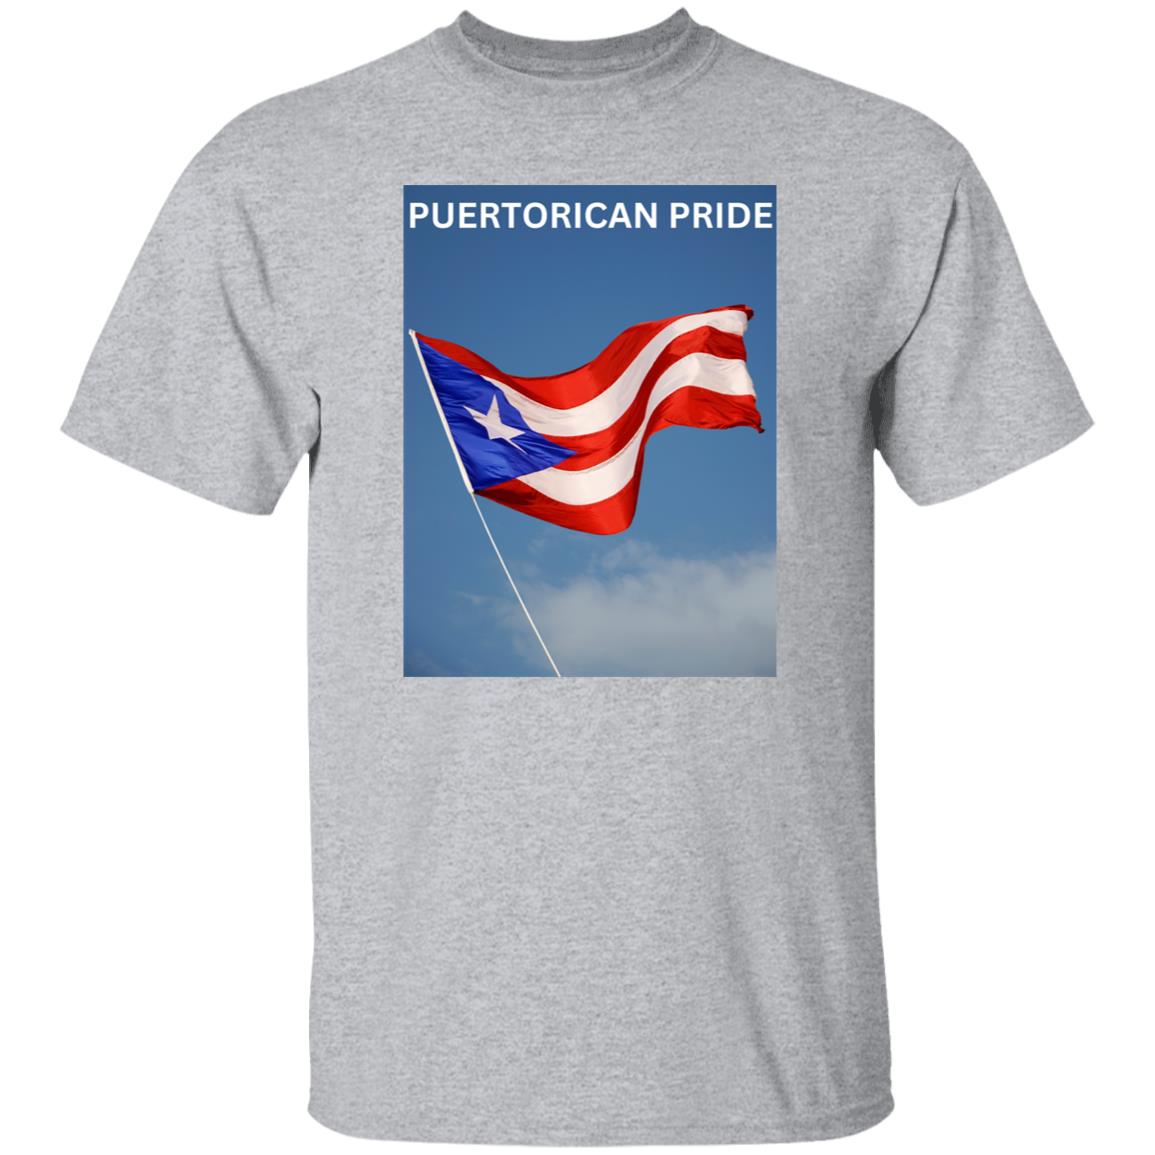 PUERTORICAN PRIDE   T Shirt